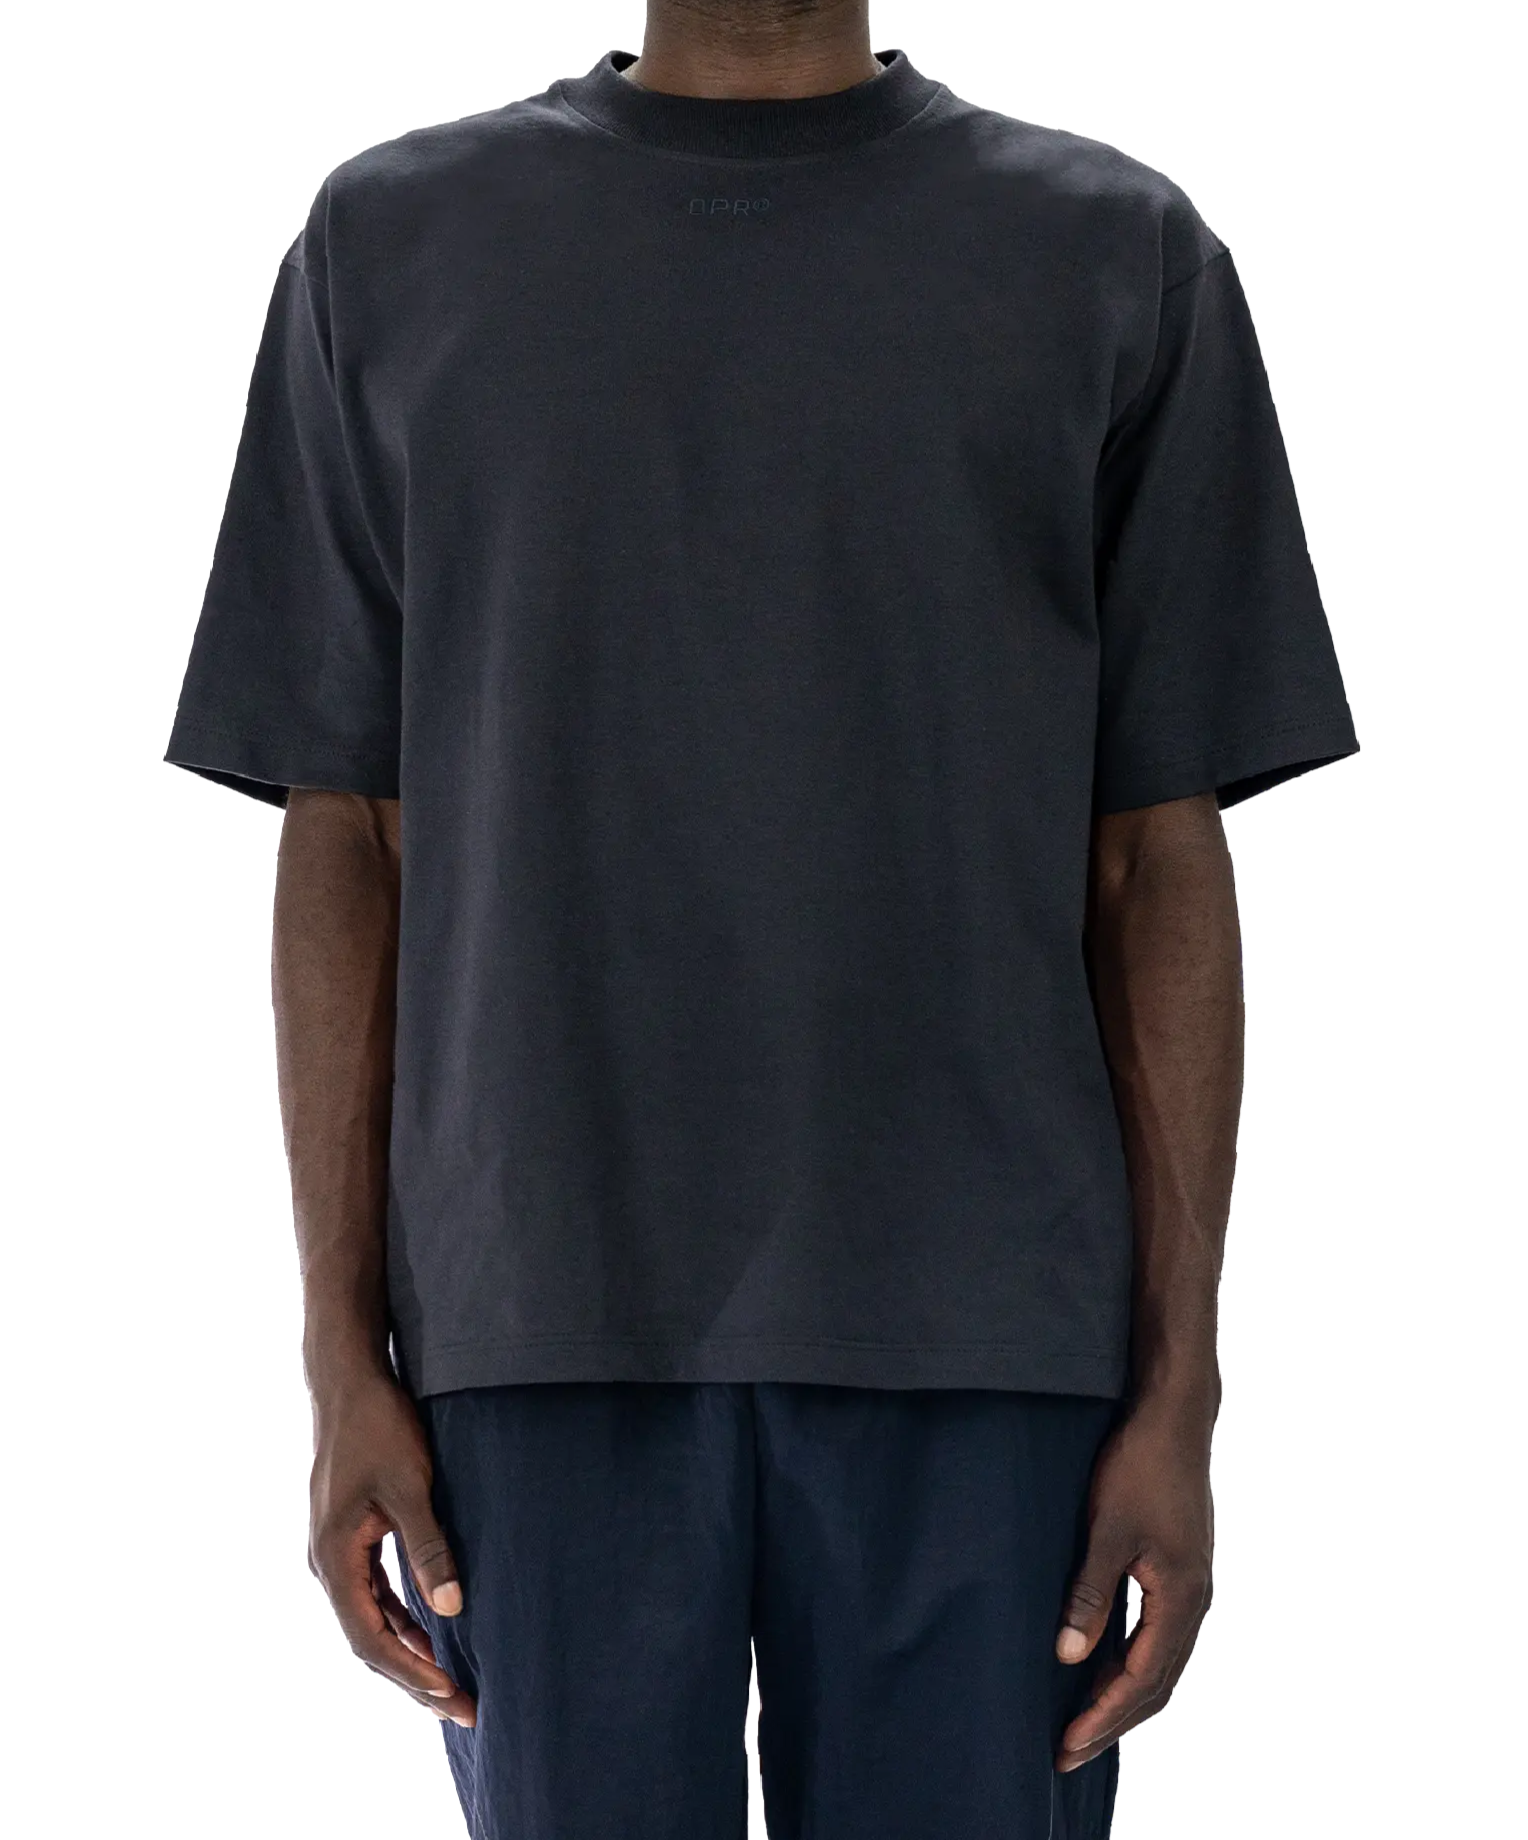 OPR® Bionic T-shirt